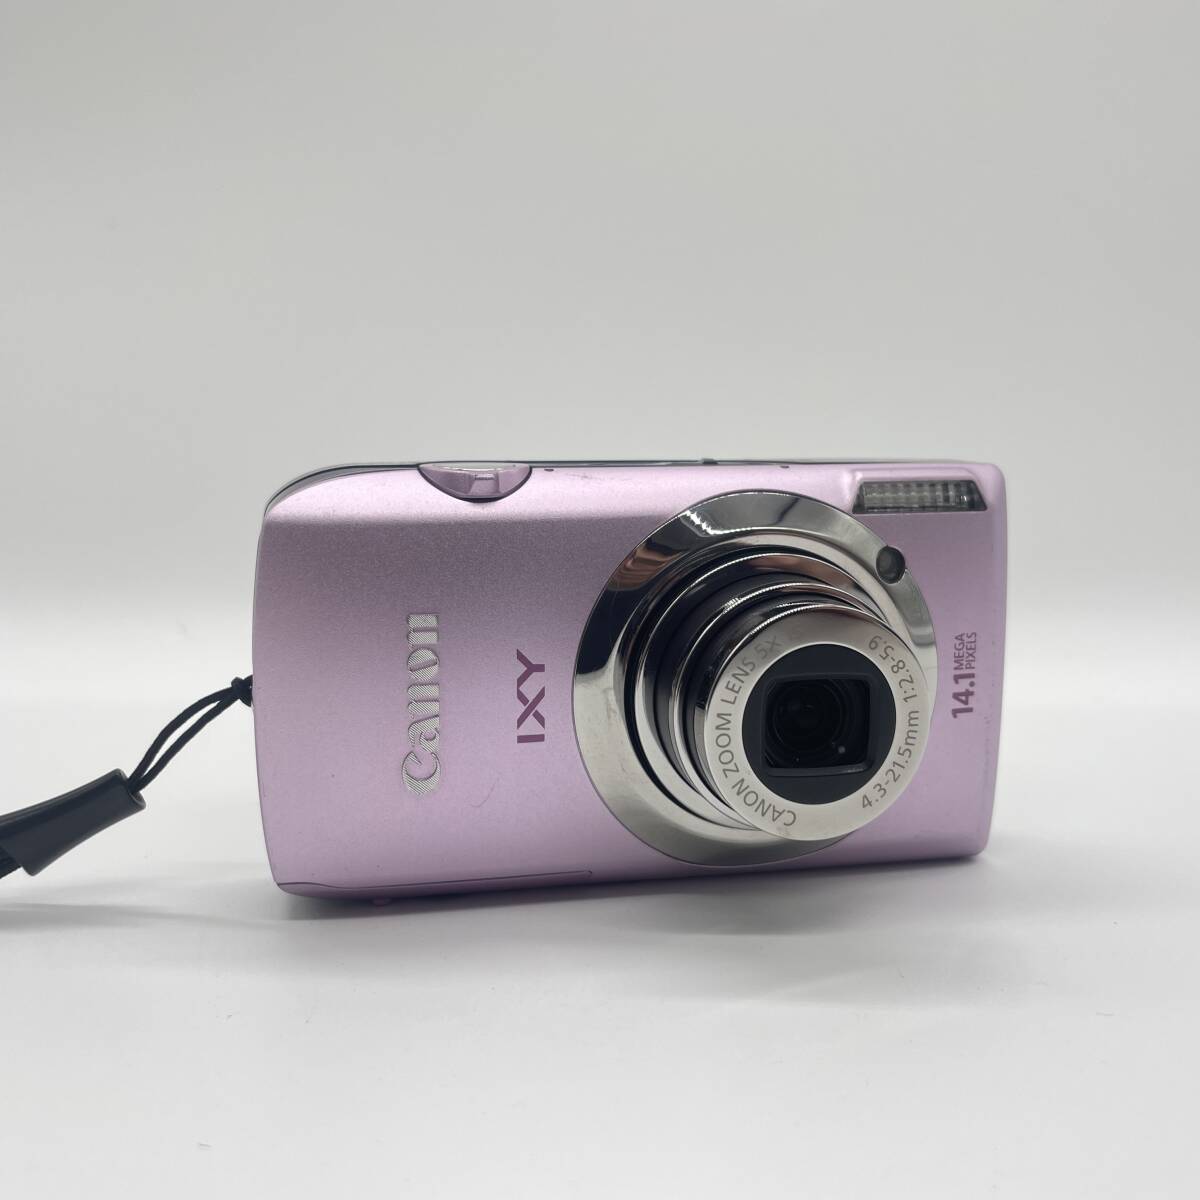 【動作確認済み】Canon IXY 10s PINK コンデジ デジカメ デジタルカメラ シャッター&フラッシュ動作OKの画像2